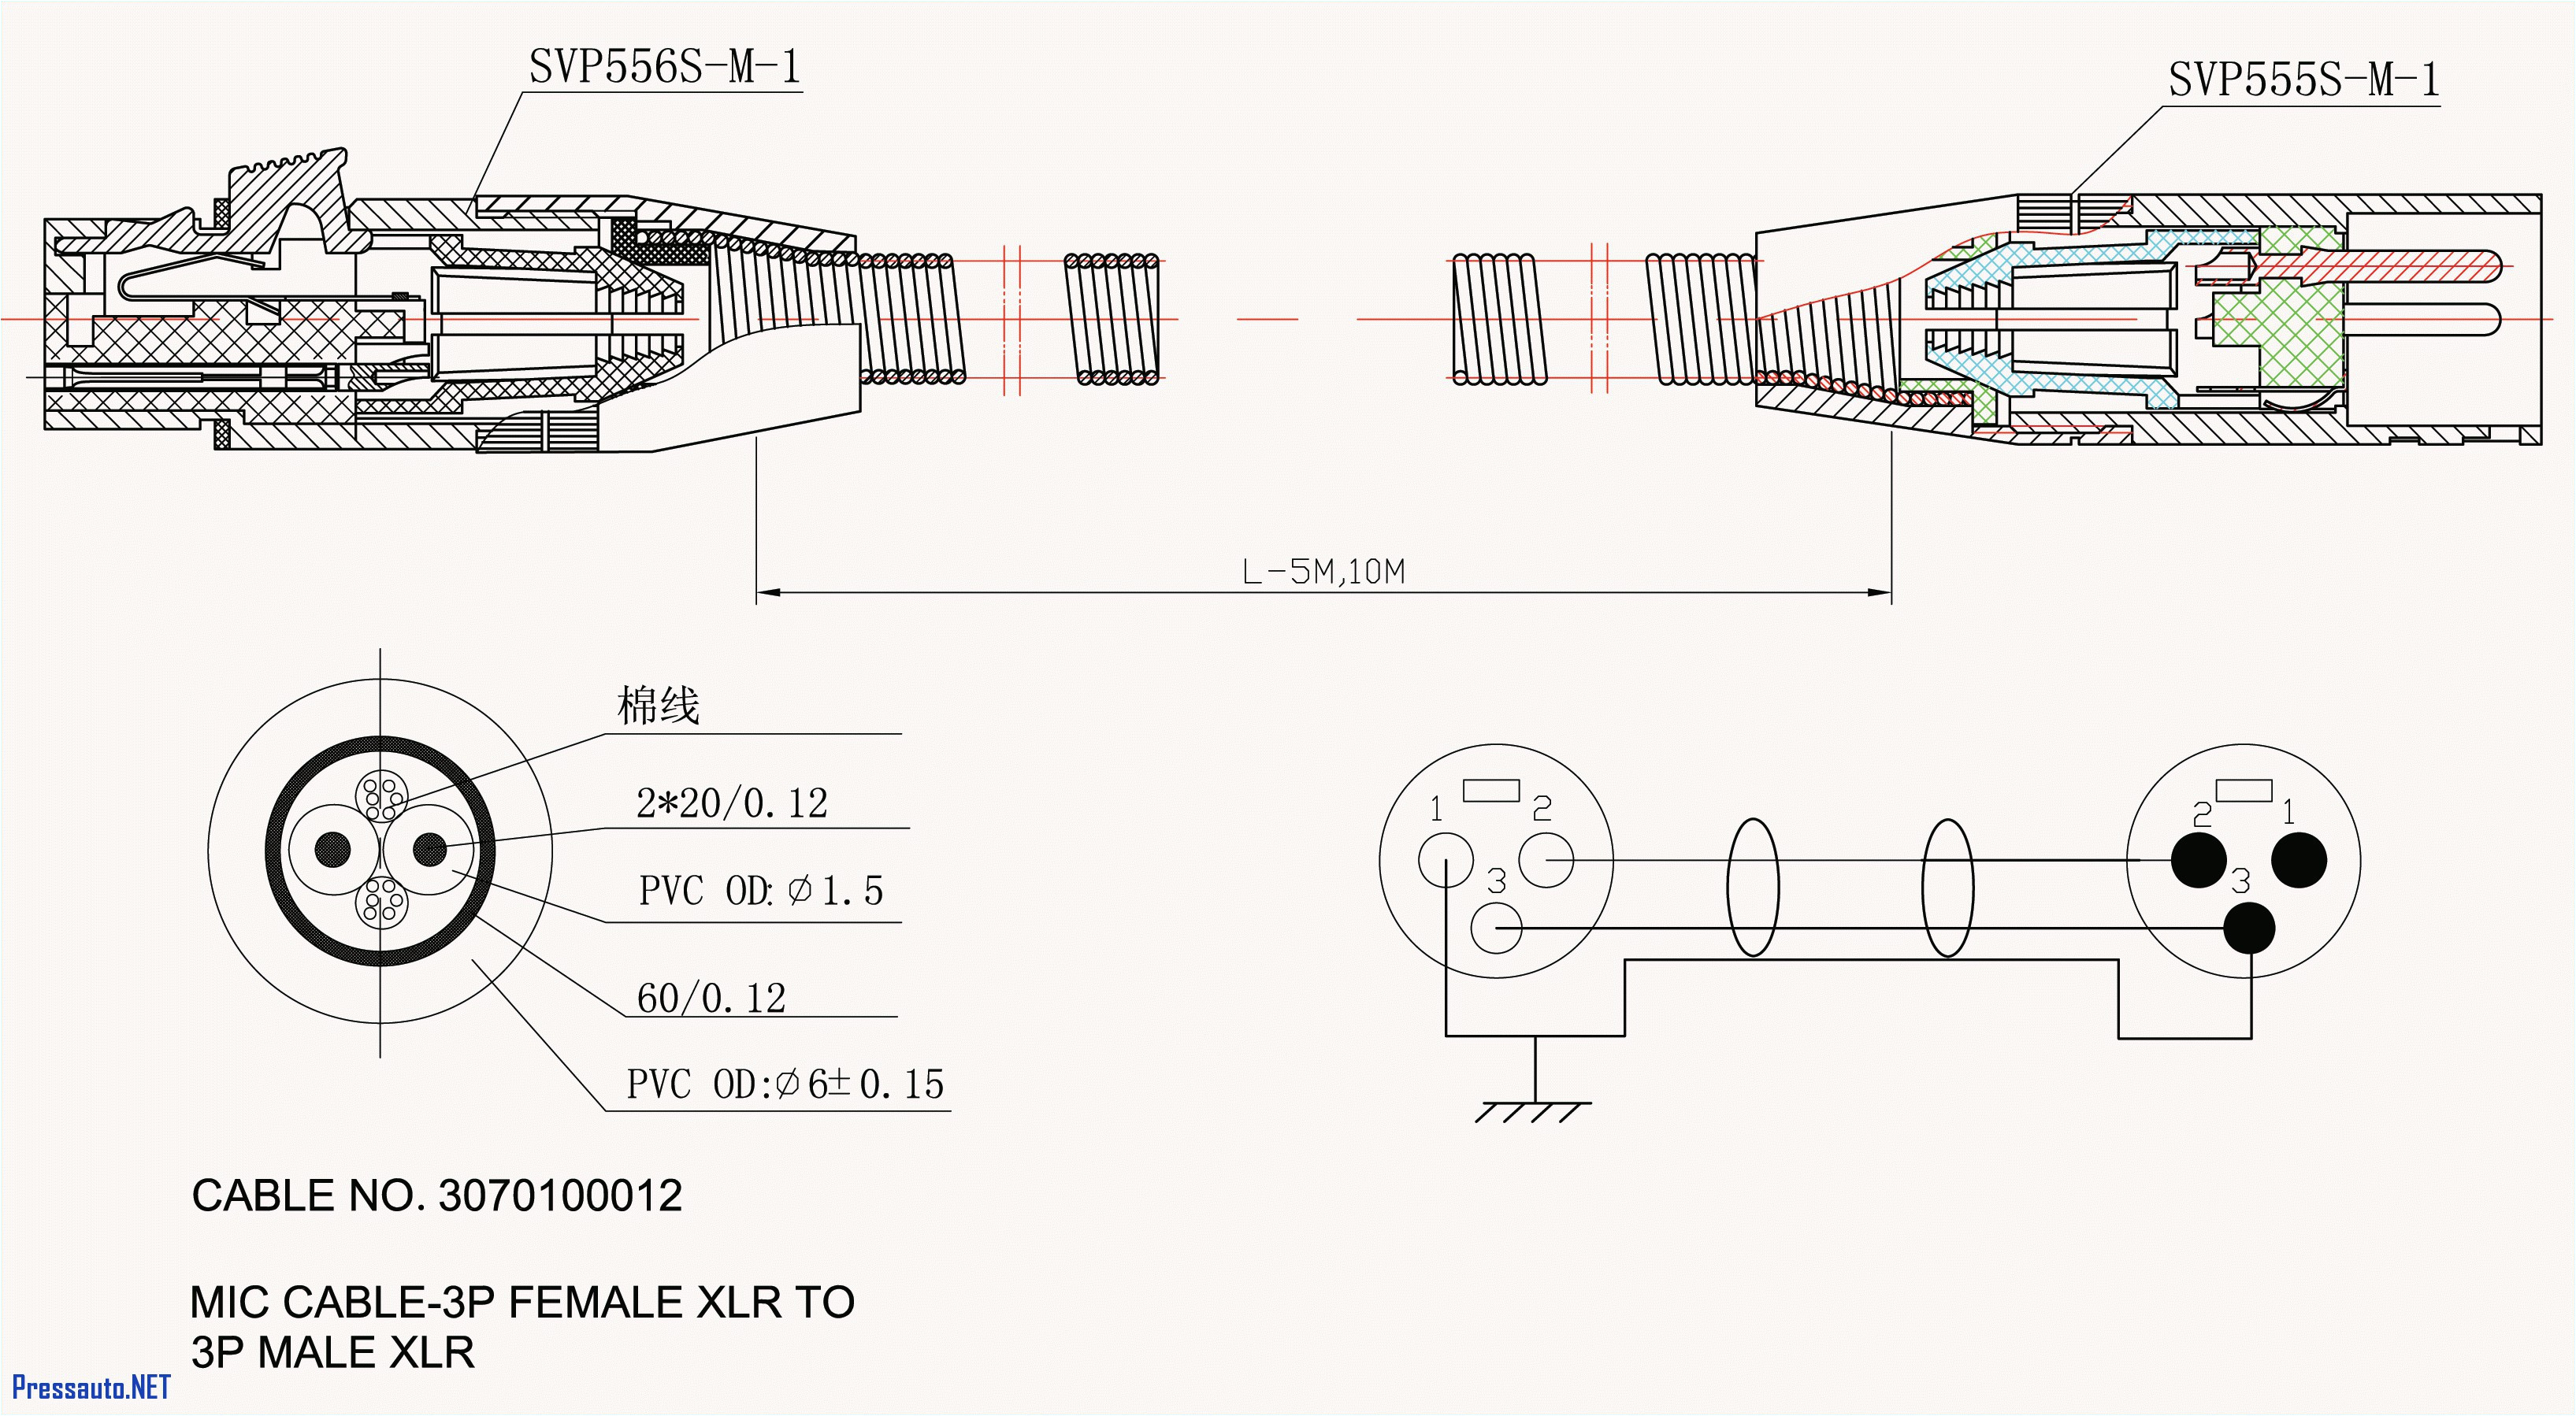 dsx panel wiring diagram fresh plane power wiring diagram download jpg